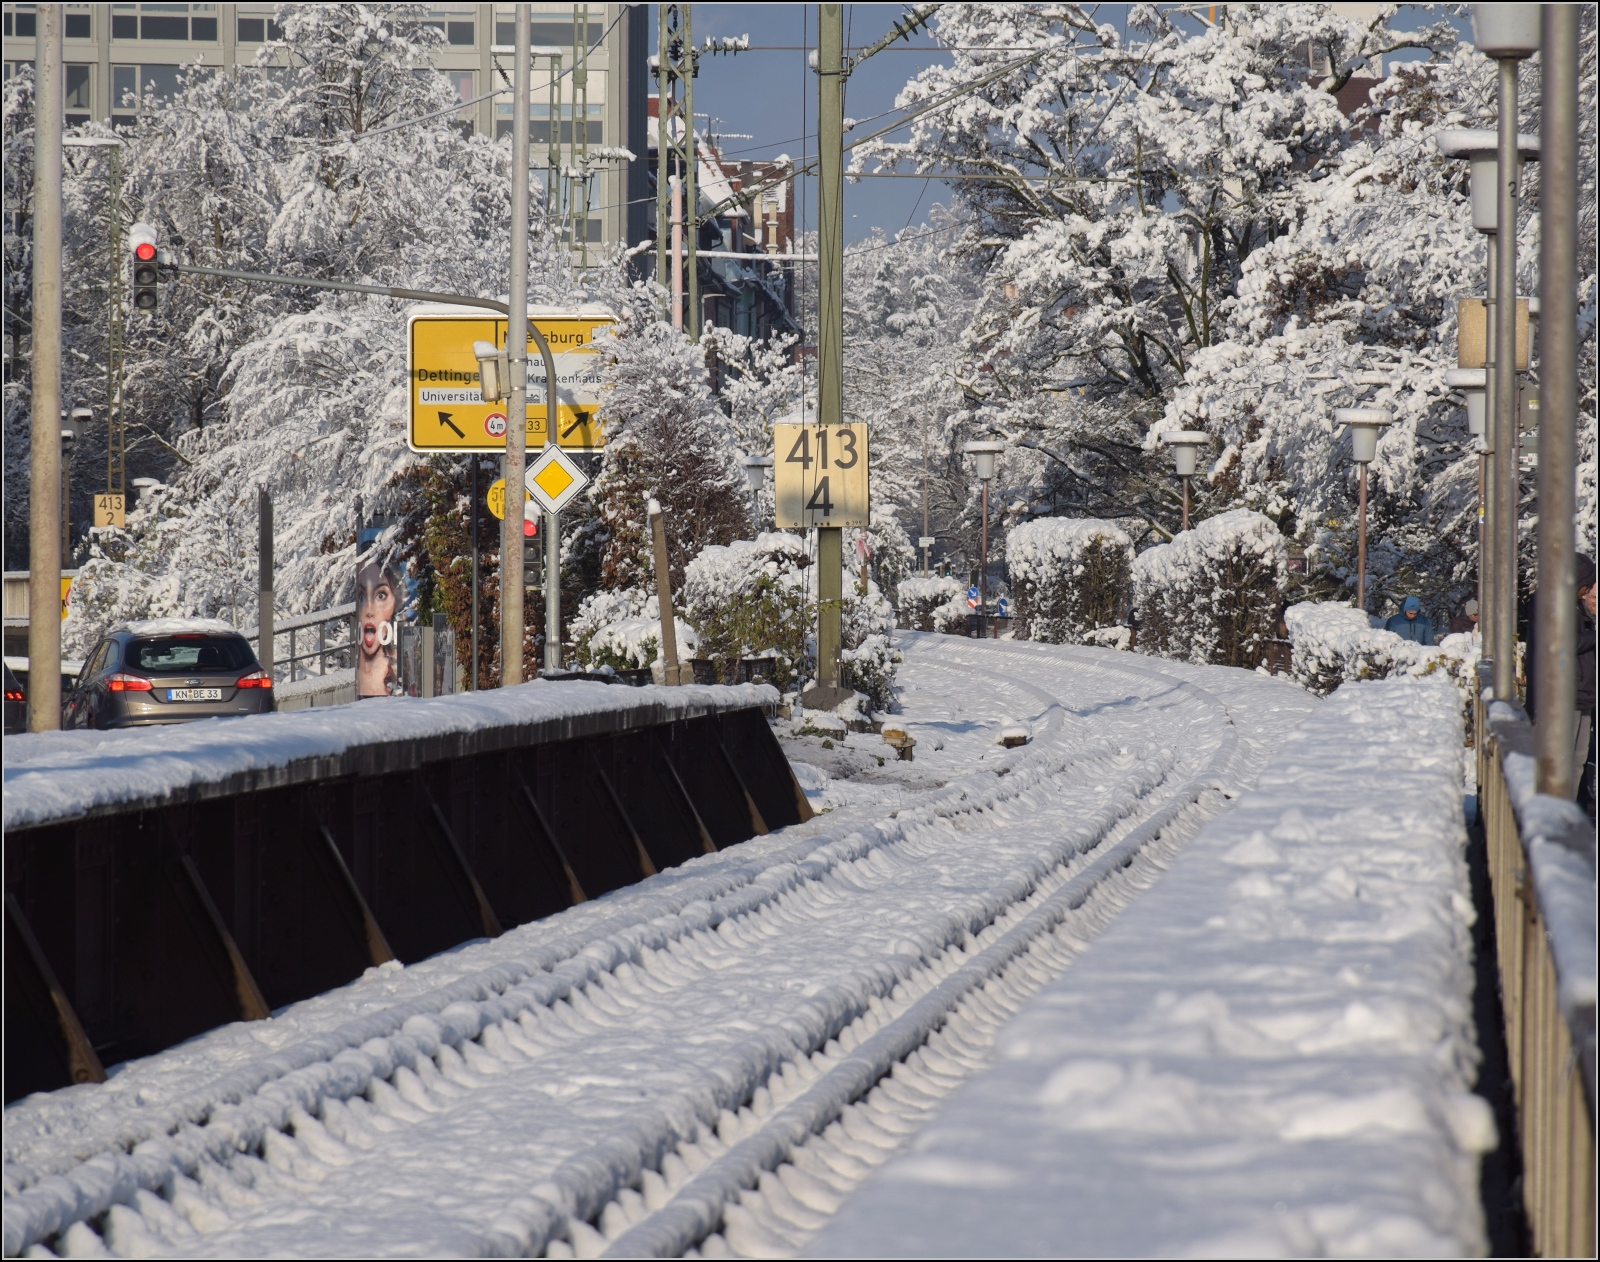 Winterzauber am Bodensee mit Nebenwirkungen.

Weisse Winterwunderwelt auf der Rheinbrcke in Konstanz im Dezember 2023. Sieht nicht nach einem Grund fr einen Betriebsunterbruch aus, jedenfalls trmt sich hier kein Schnee auf. De facto ist die Strecke aber ein Problembr, aus welchen Grnden auch immer.